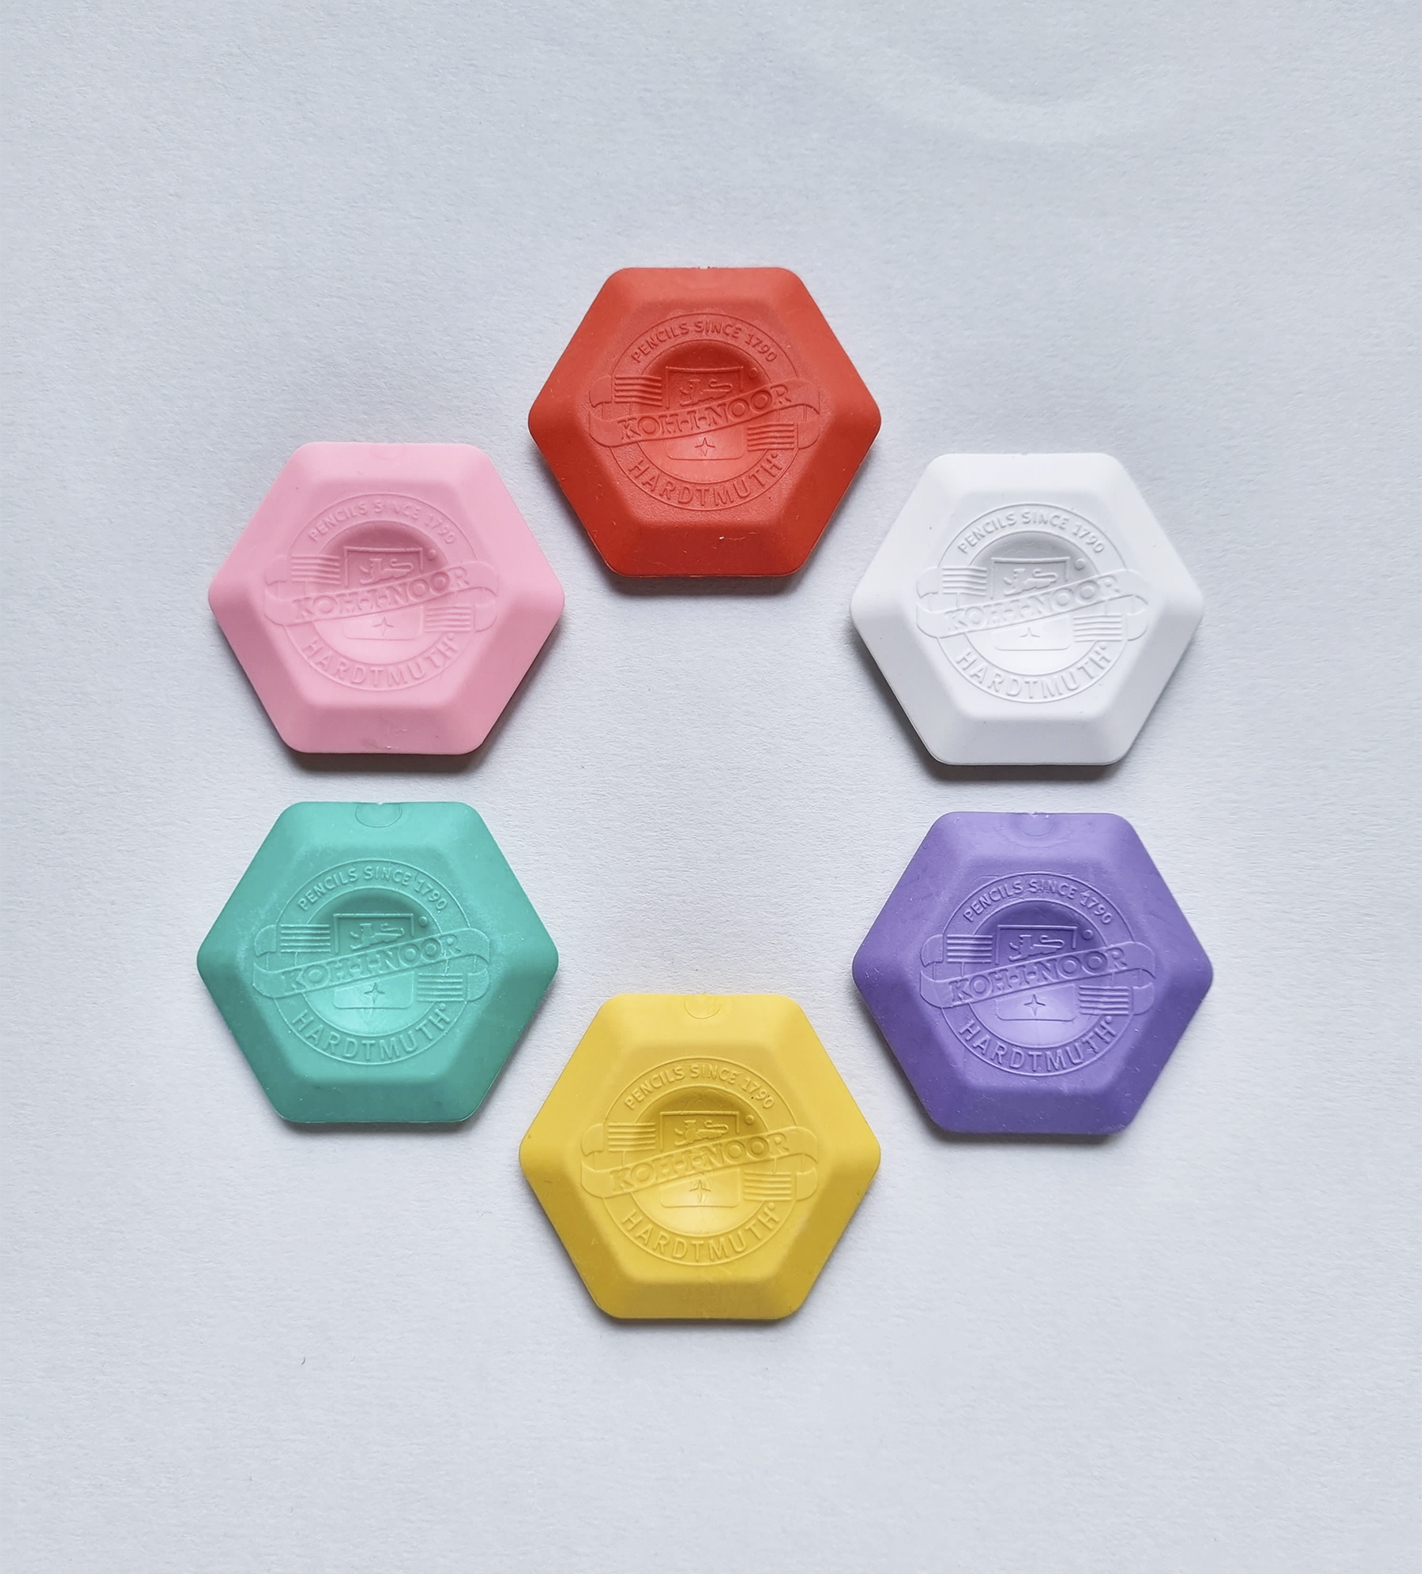 koh-i-noor hexagon erasers